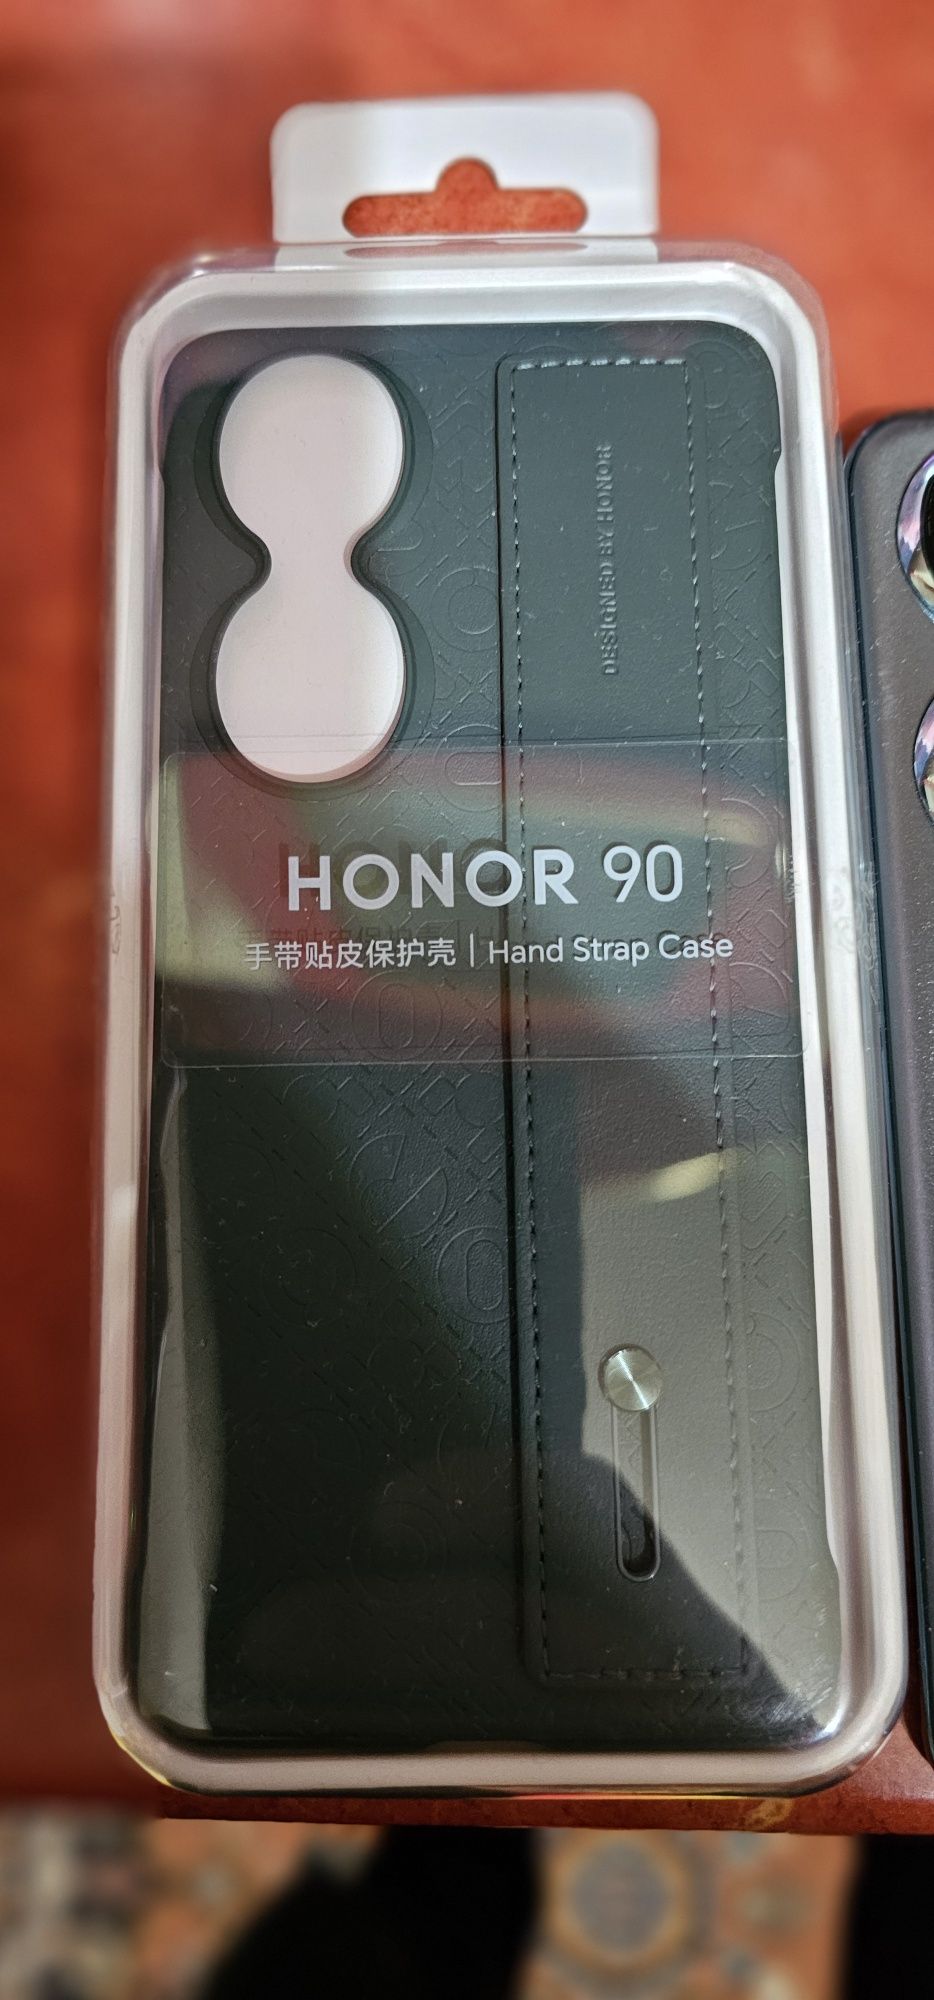 Honor 90 ful box